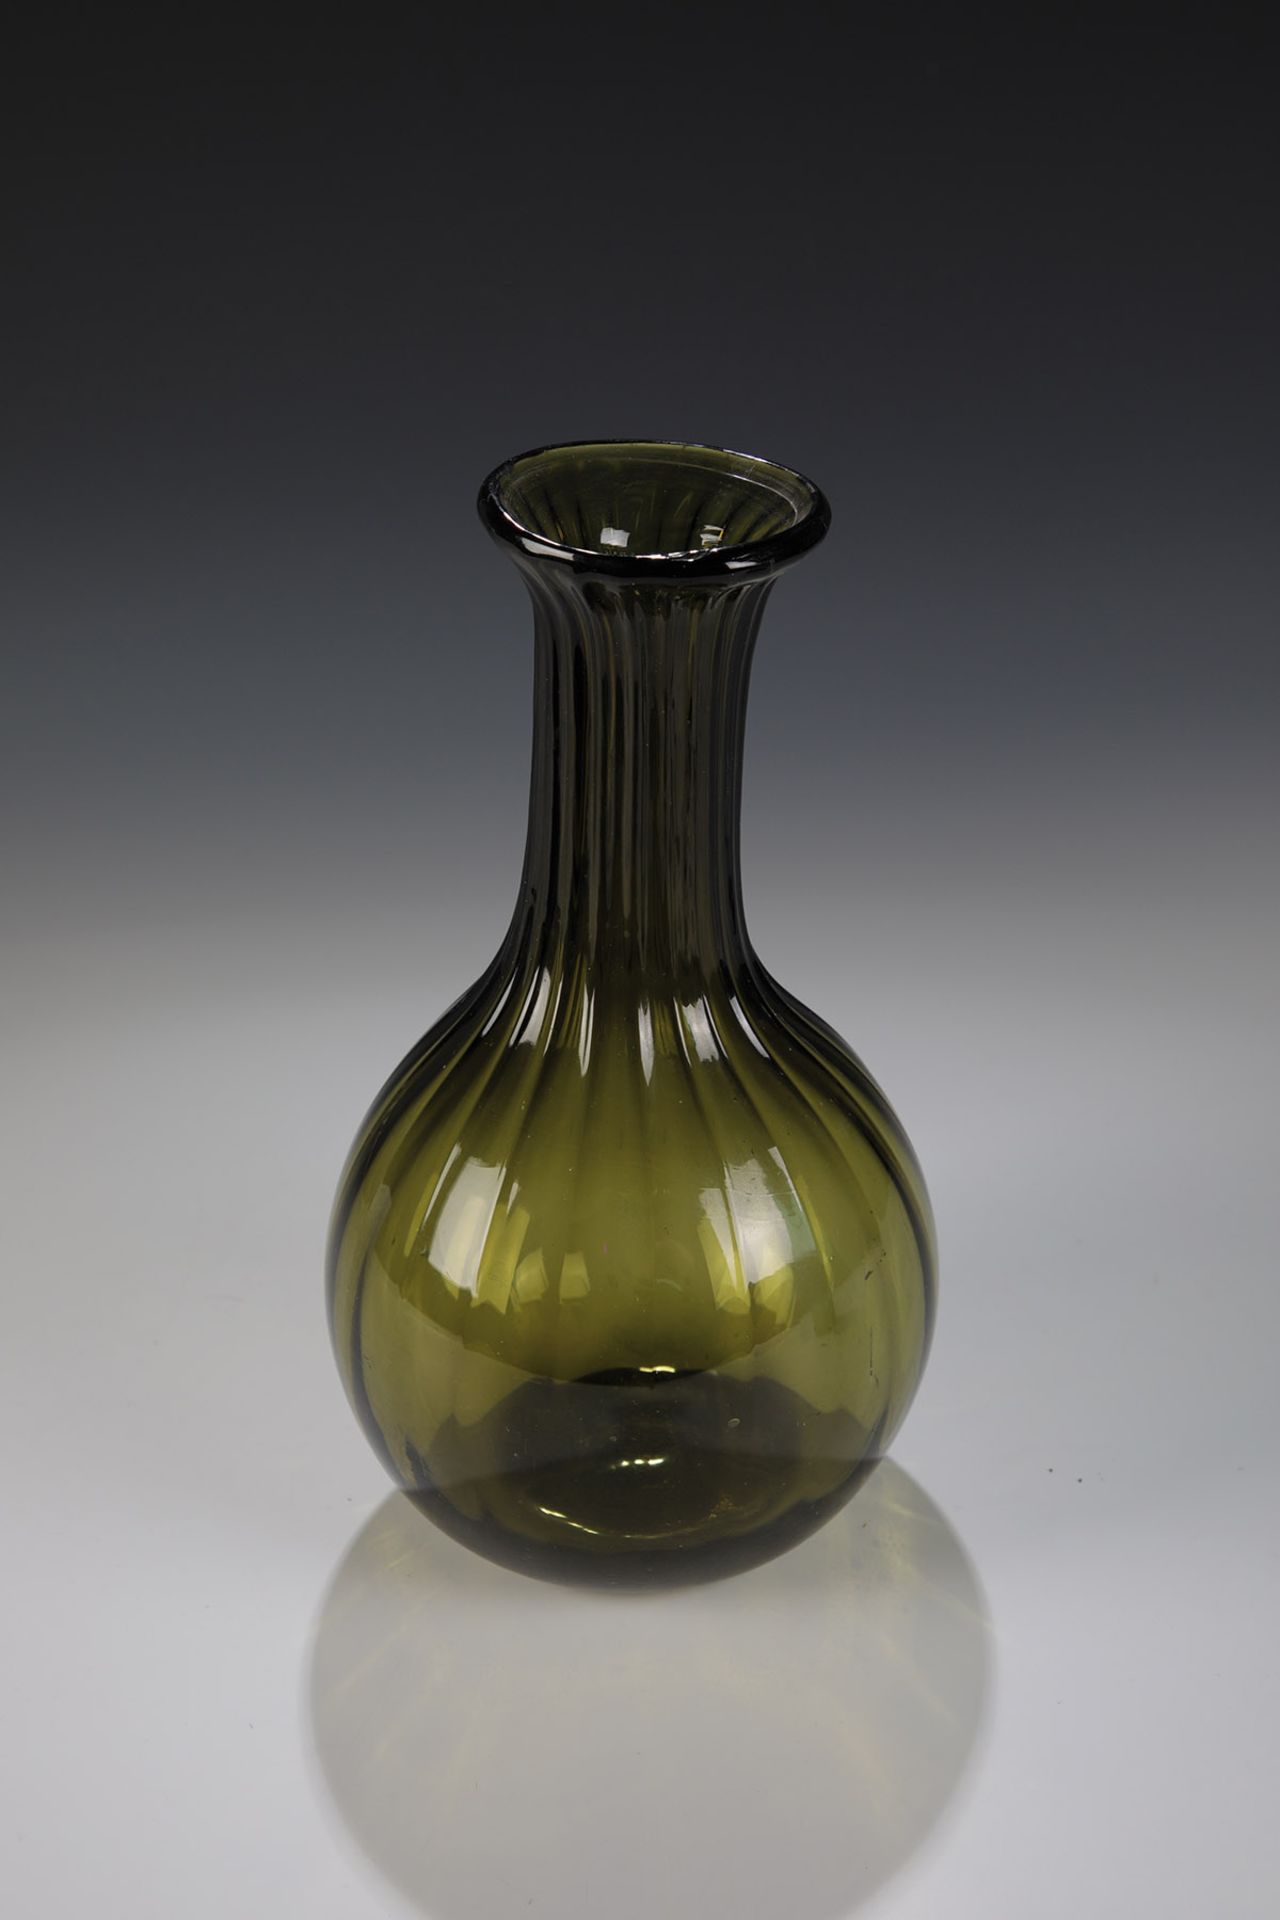 KugelflascheNorddeutschland, 19. Jh. Olivfarbenes Glas mit Abriss, die tropfenförmige Wandung und